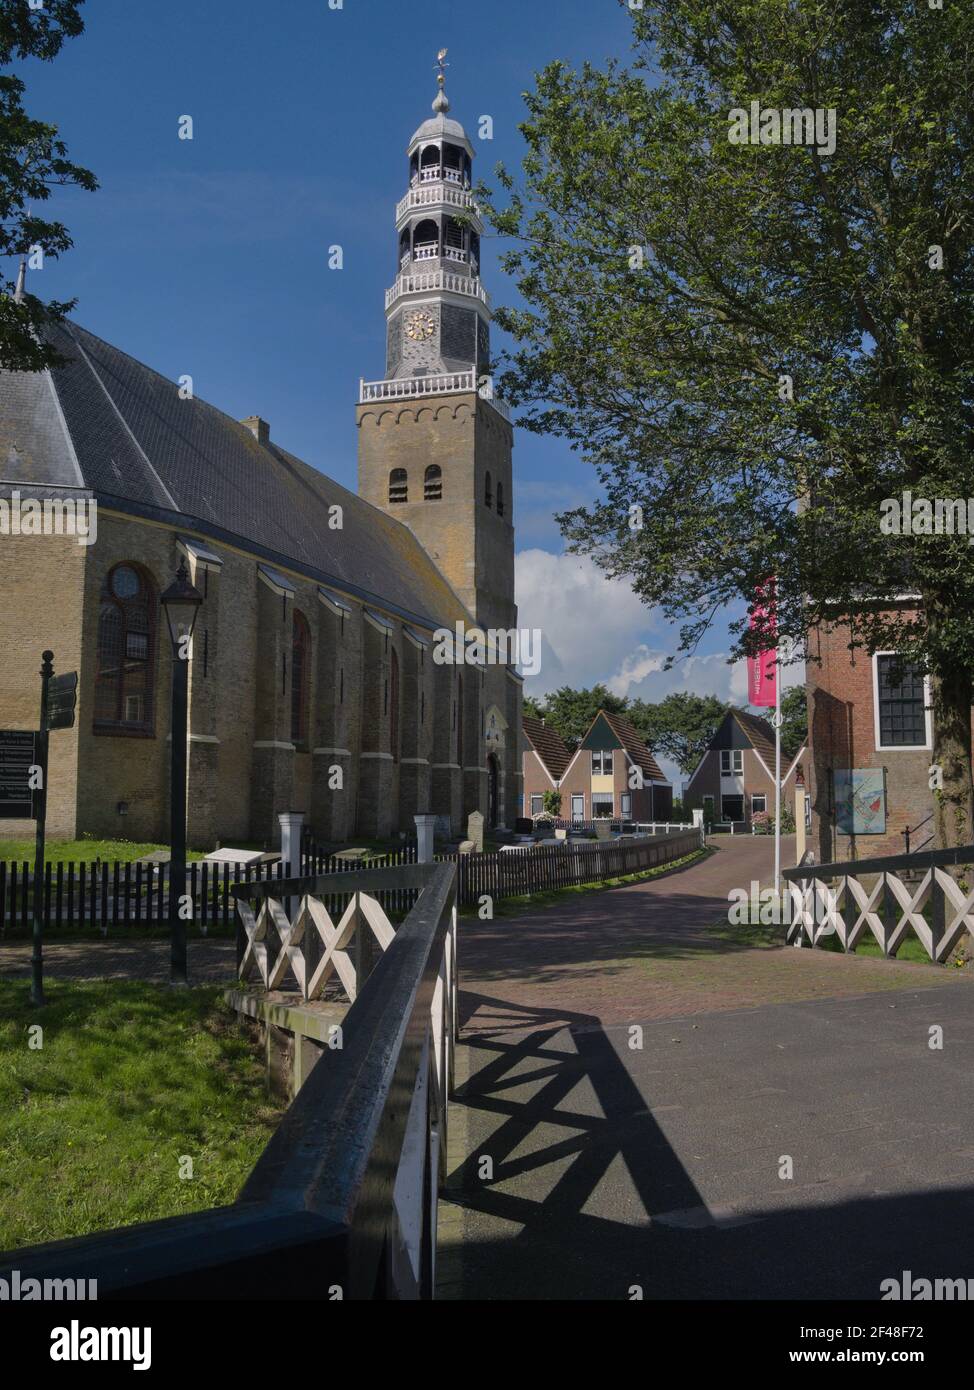 'Grote kerk' - church in Hindeloopen - Netherlands Stock Photo